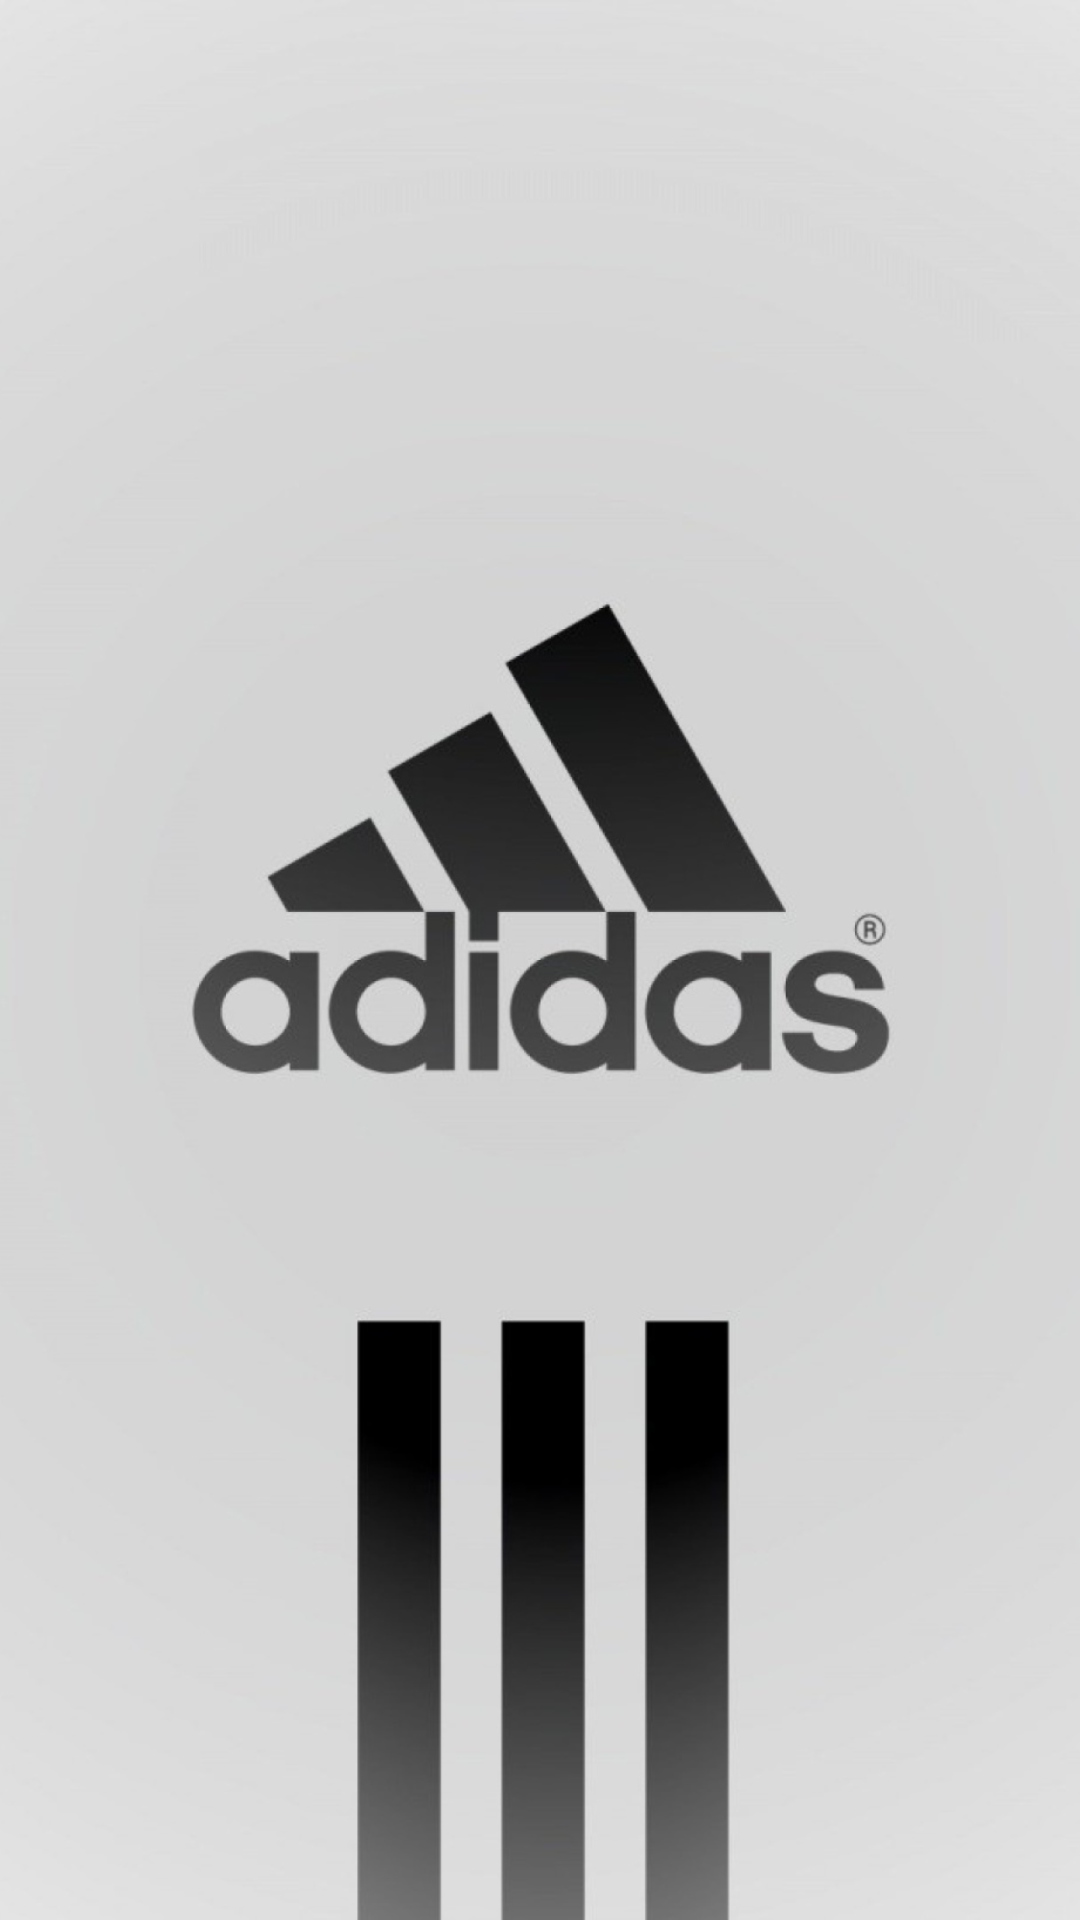 adidas iphone background